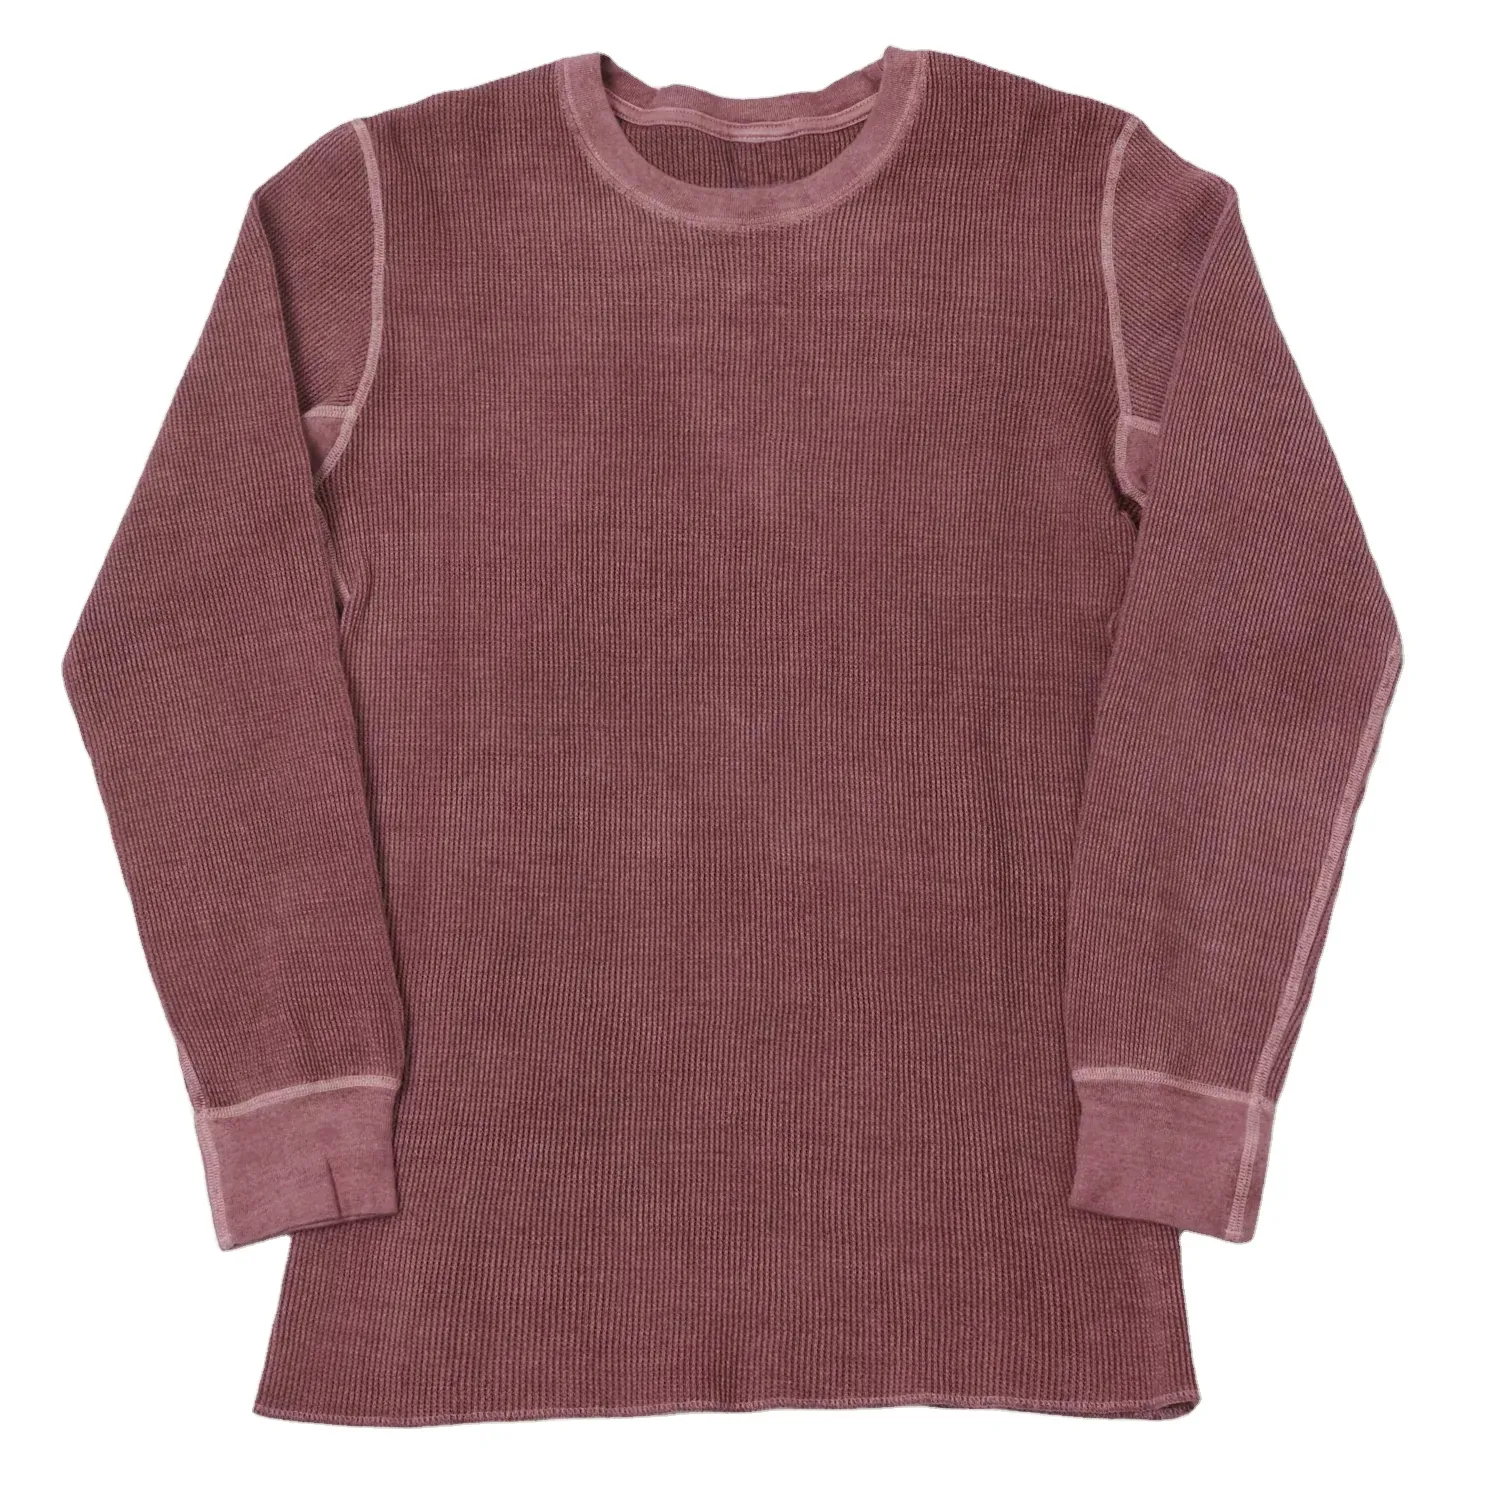 Winter Clothing Custom Stone Washed Acid Washing Sweatshirts 100% Cotton Waffle Knit Thermal Shirts Long Sleeve Acid Wash Shirt